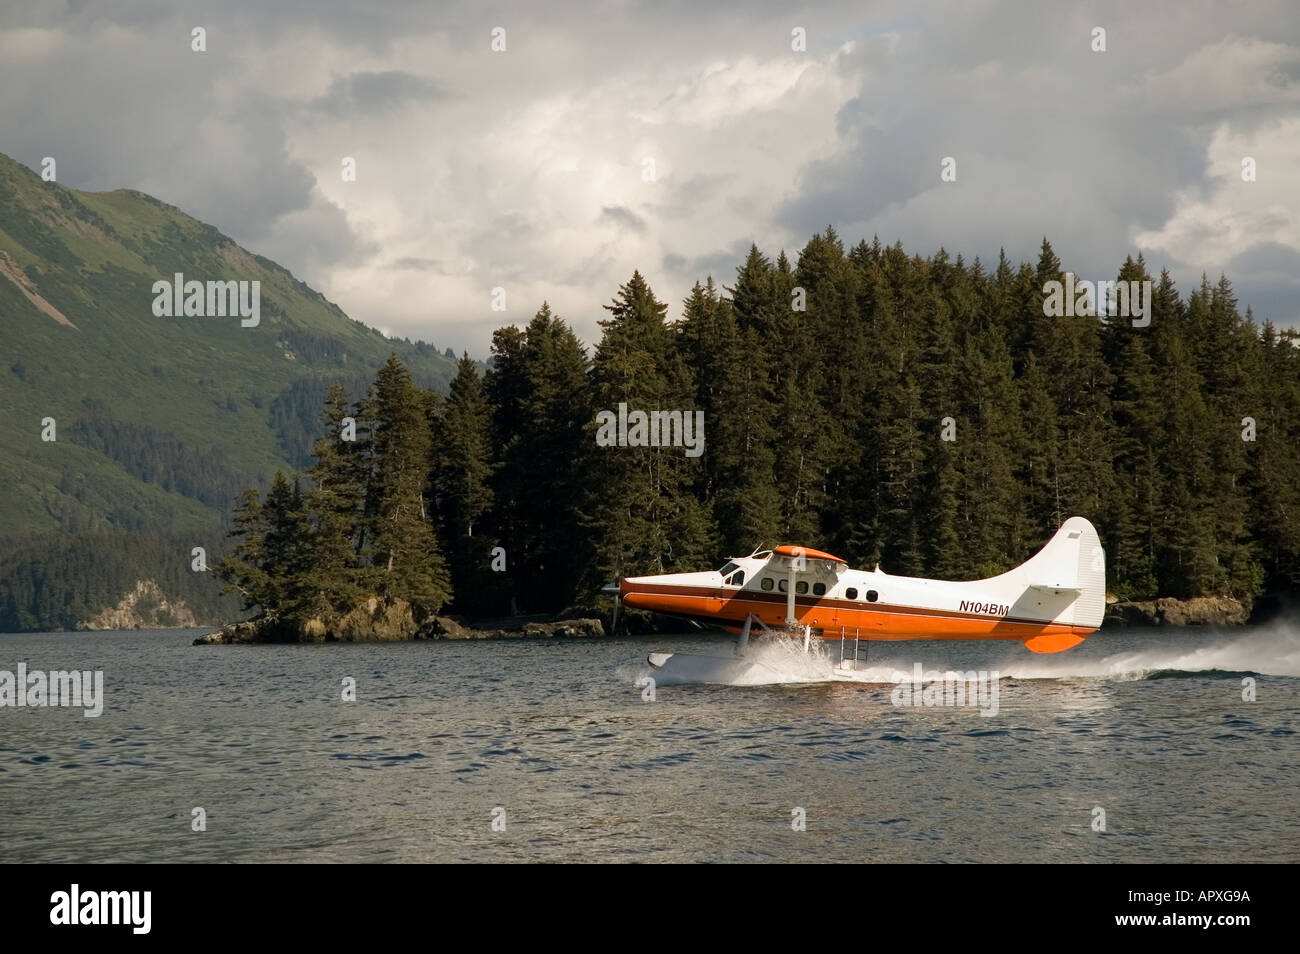 Turbo Otter avion décollant de Kachemak Bay près de Homer, Alaska Banque D'Images